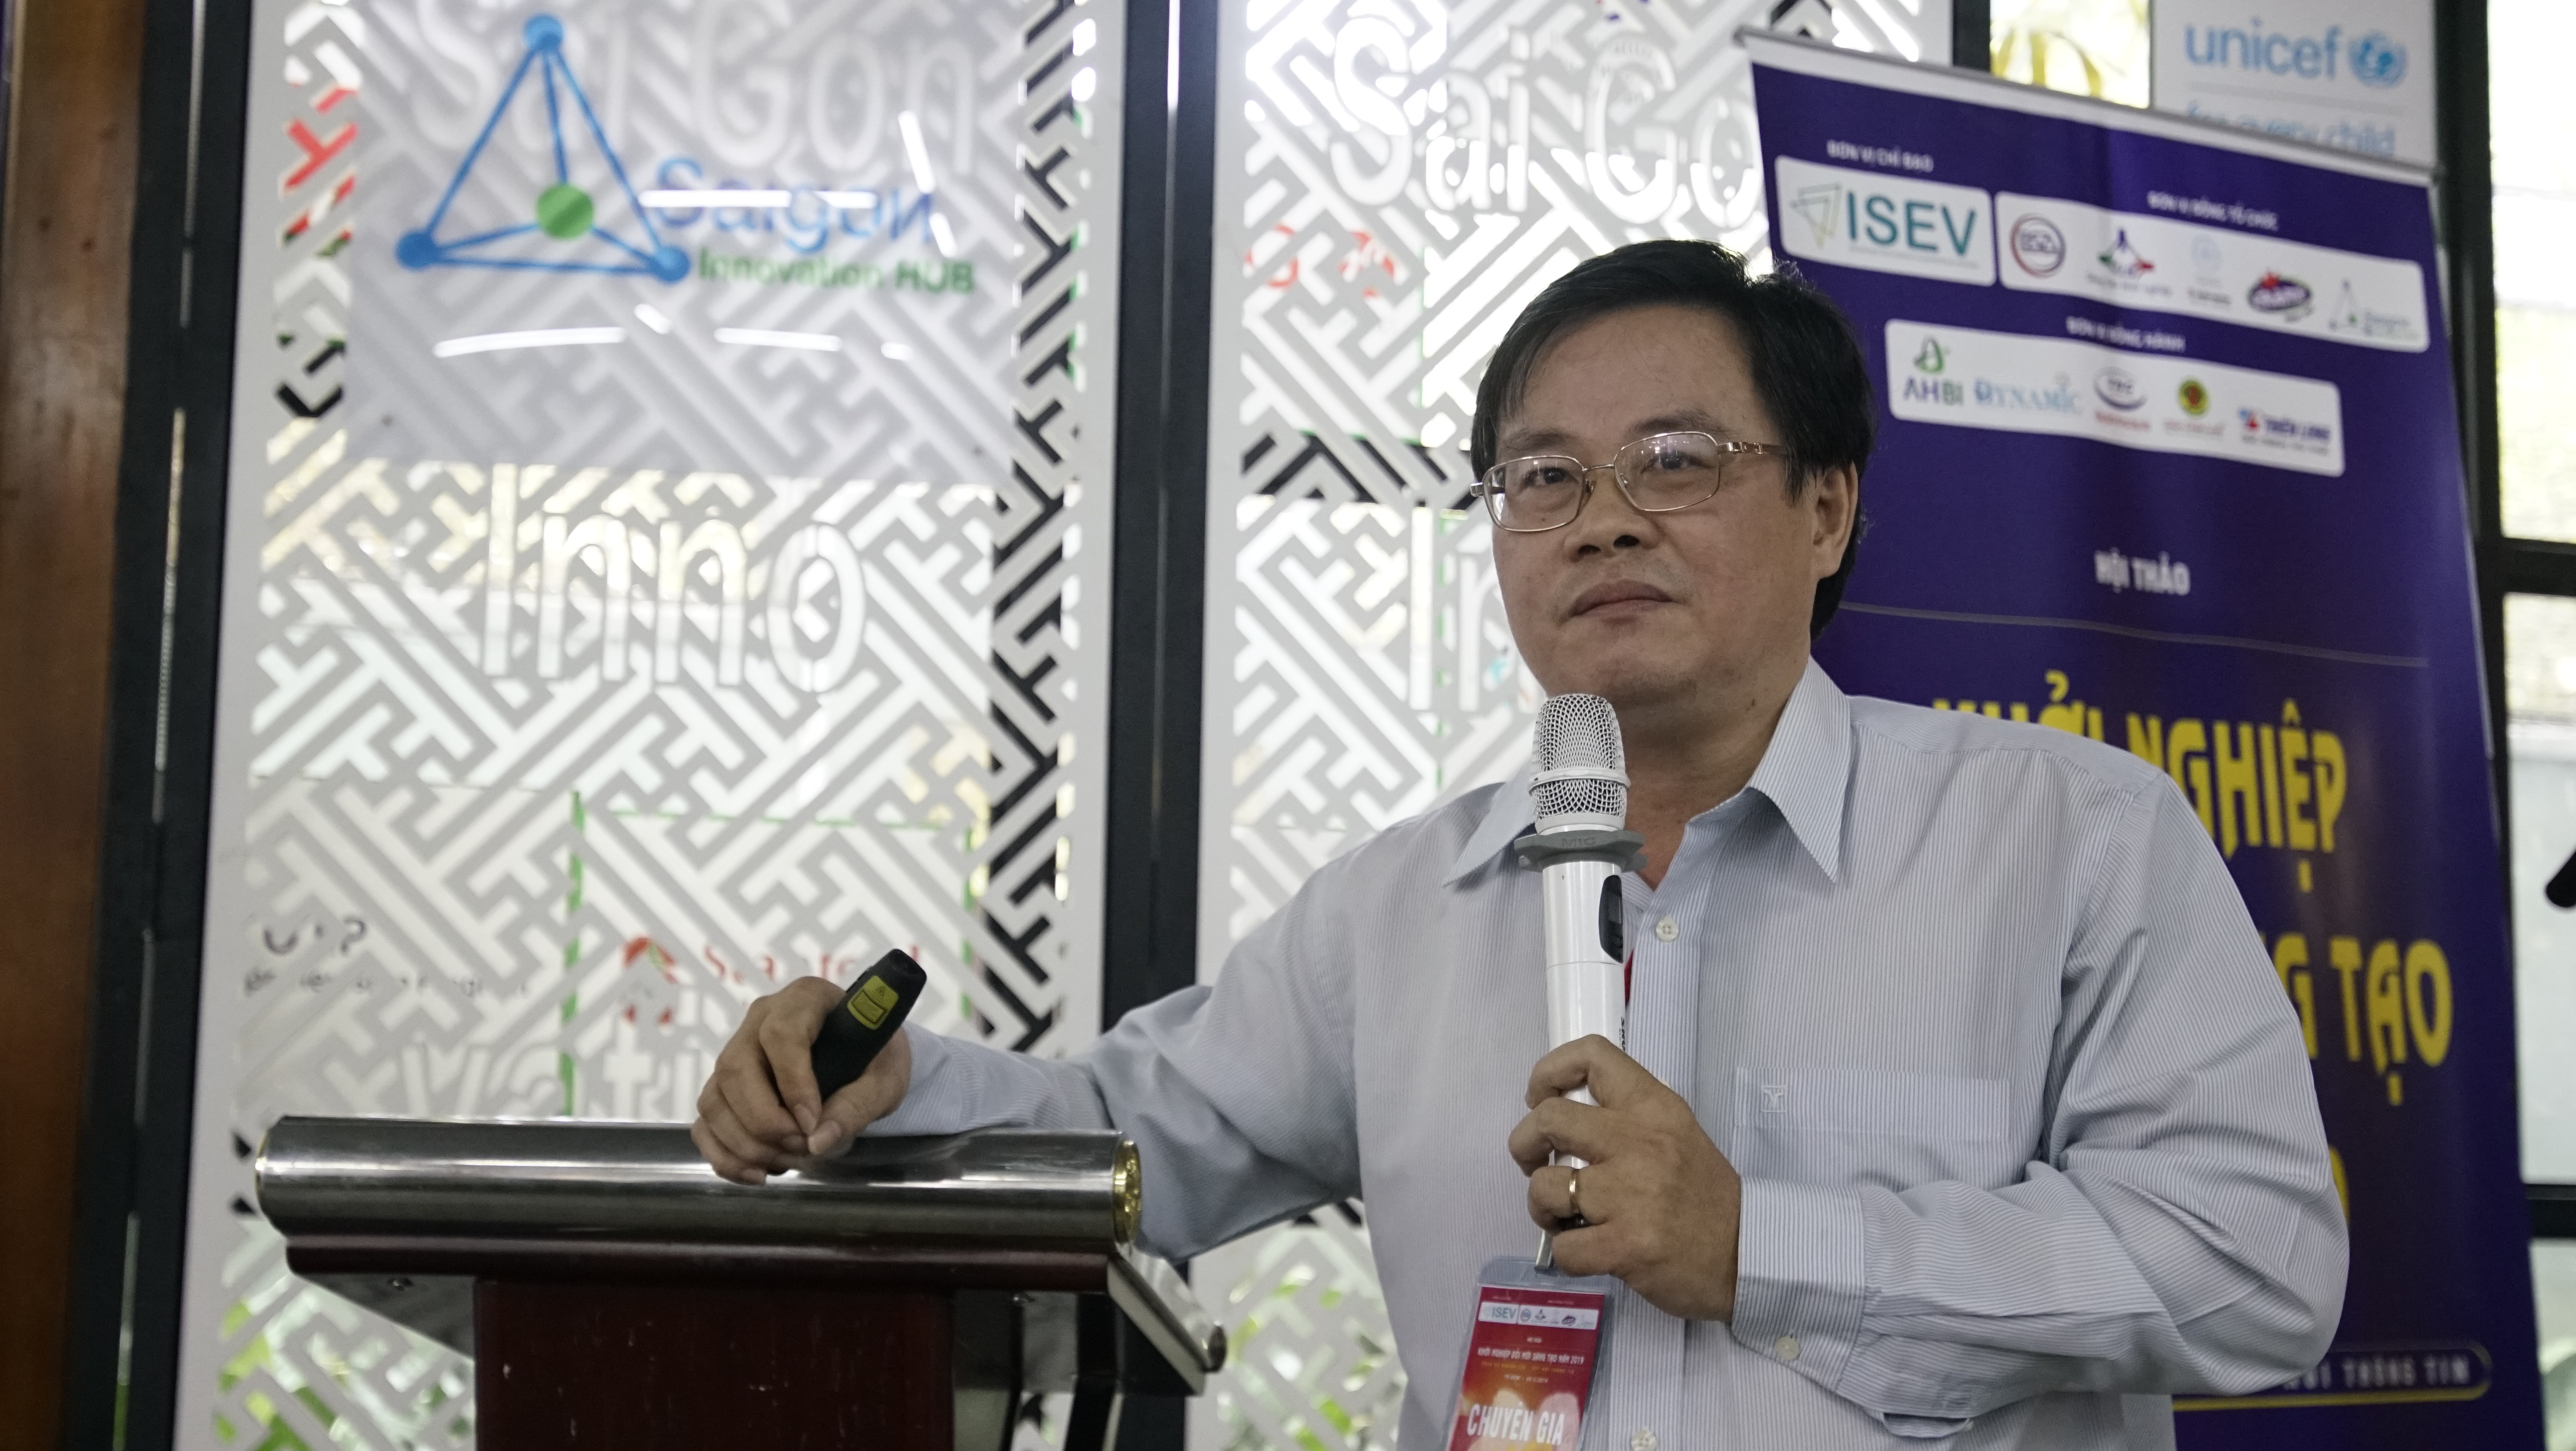 Ông Trần Anh Tuấn – Giám đốc công ty tư vấn The Pathfinder chia sẻ về tư duy khởi nghiệp sáng tạo.